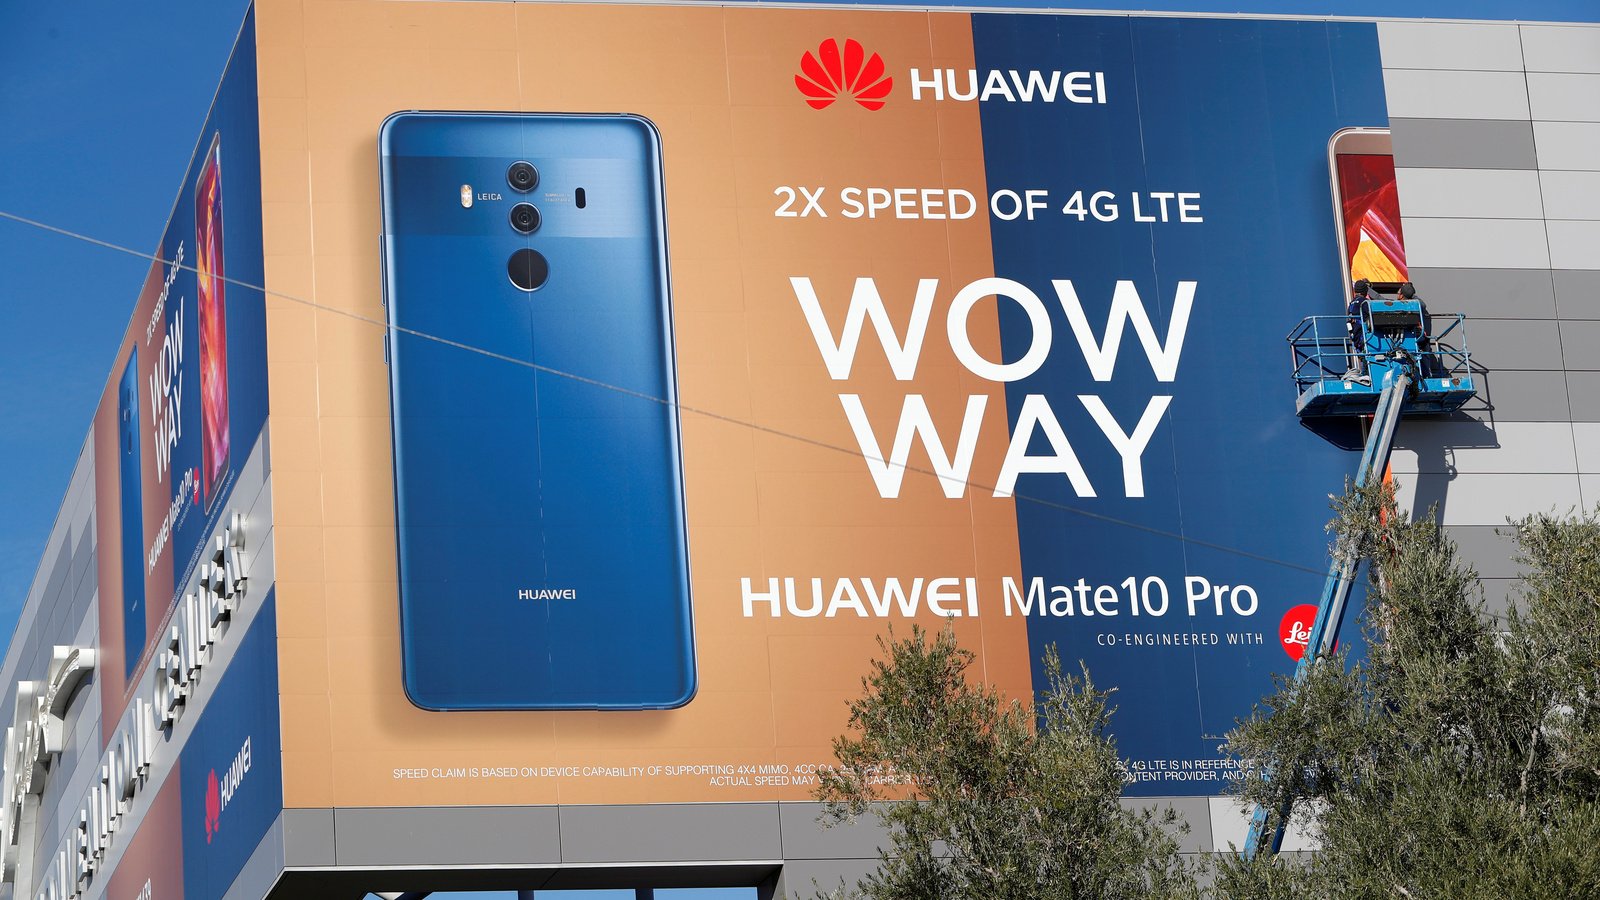 Всплывает реклама хуавей. Huawei реклама. Баннеры Huawei. Телевизор Huawei баннер. Huawei ad21.